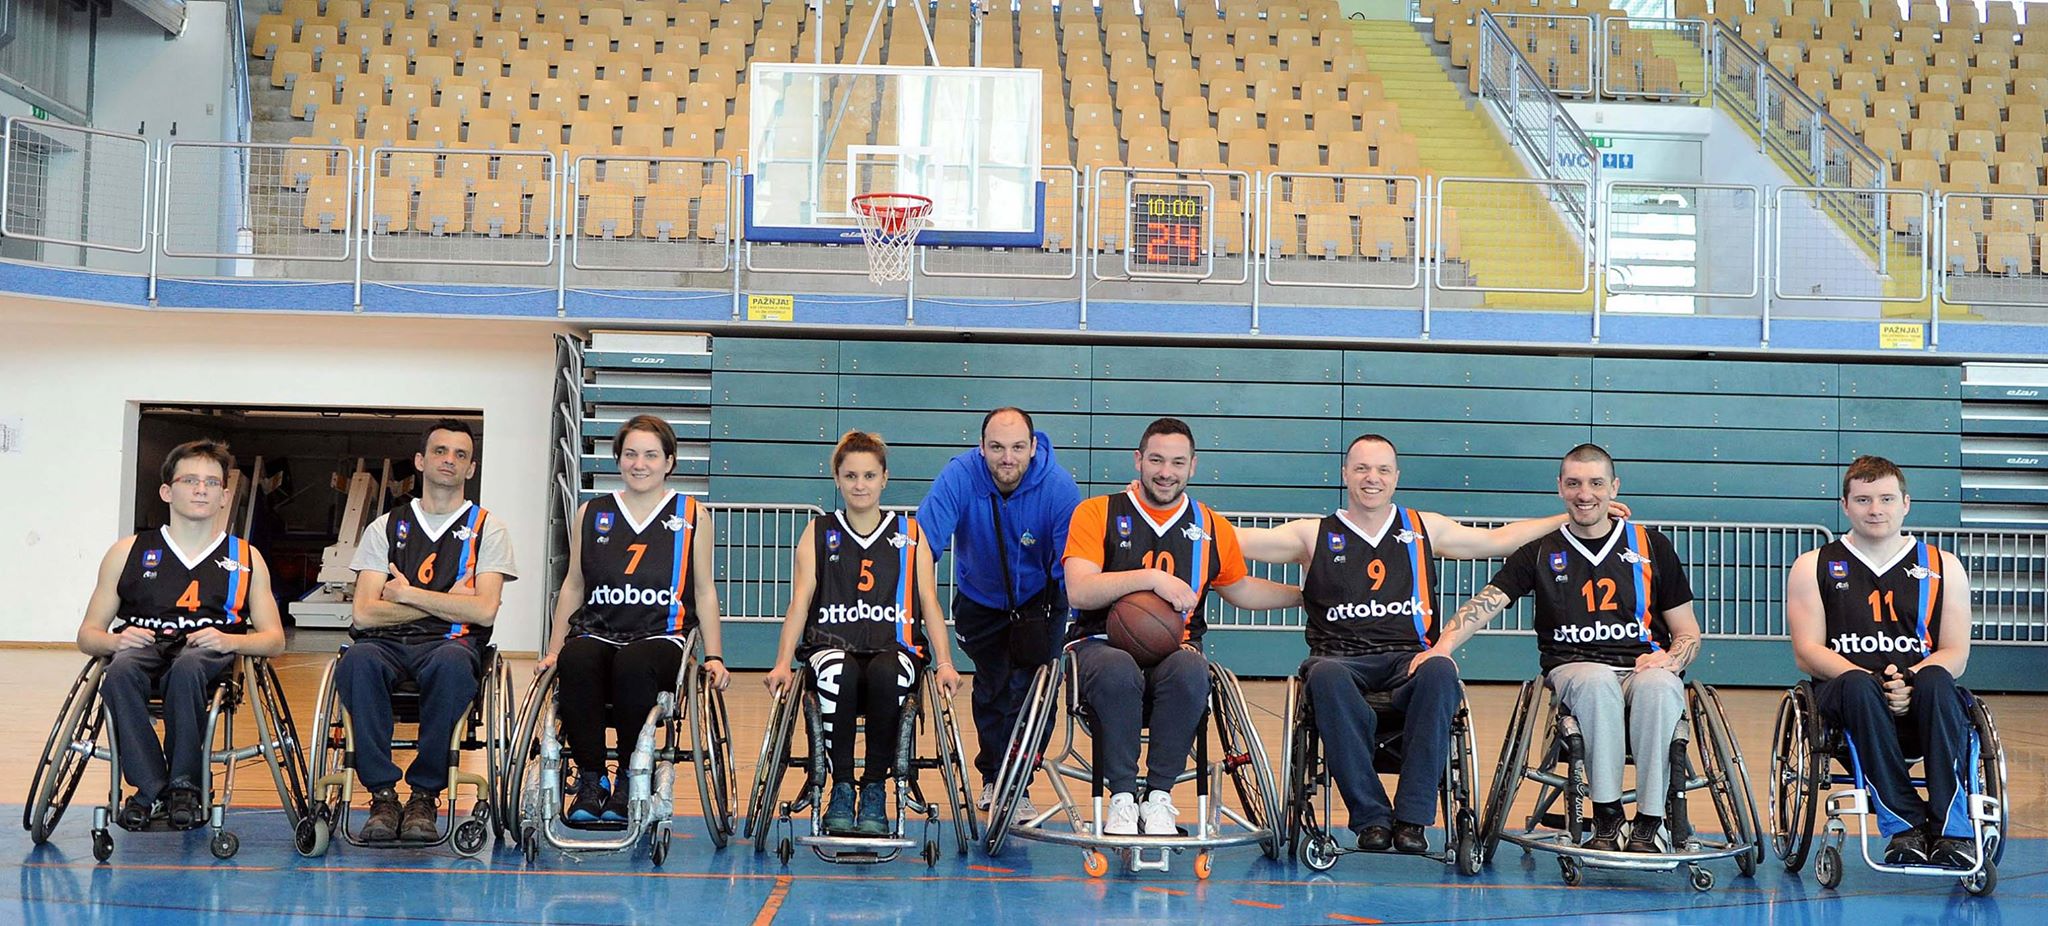 Dvije ekipe, jedno srce - Siniša Kuharić s djecom iz Centra za odgoj i obrazovanje i s košarkašima u kolicima "Kostrene"